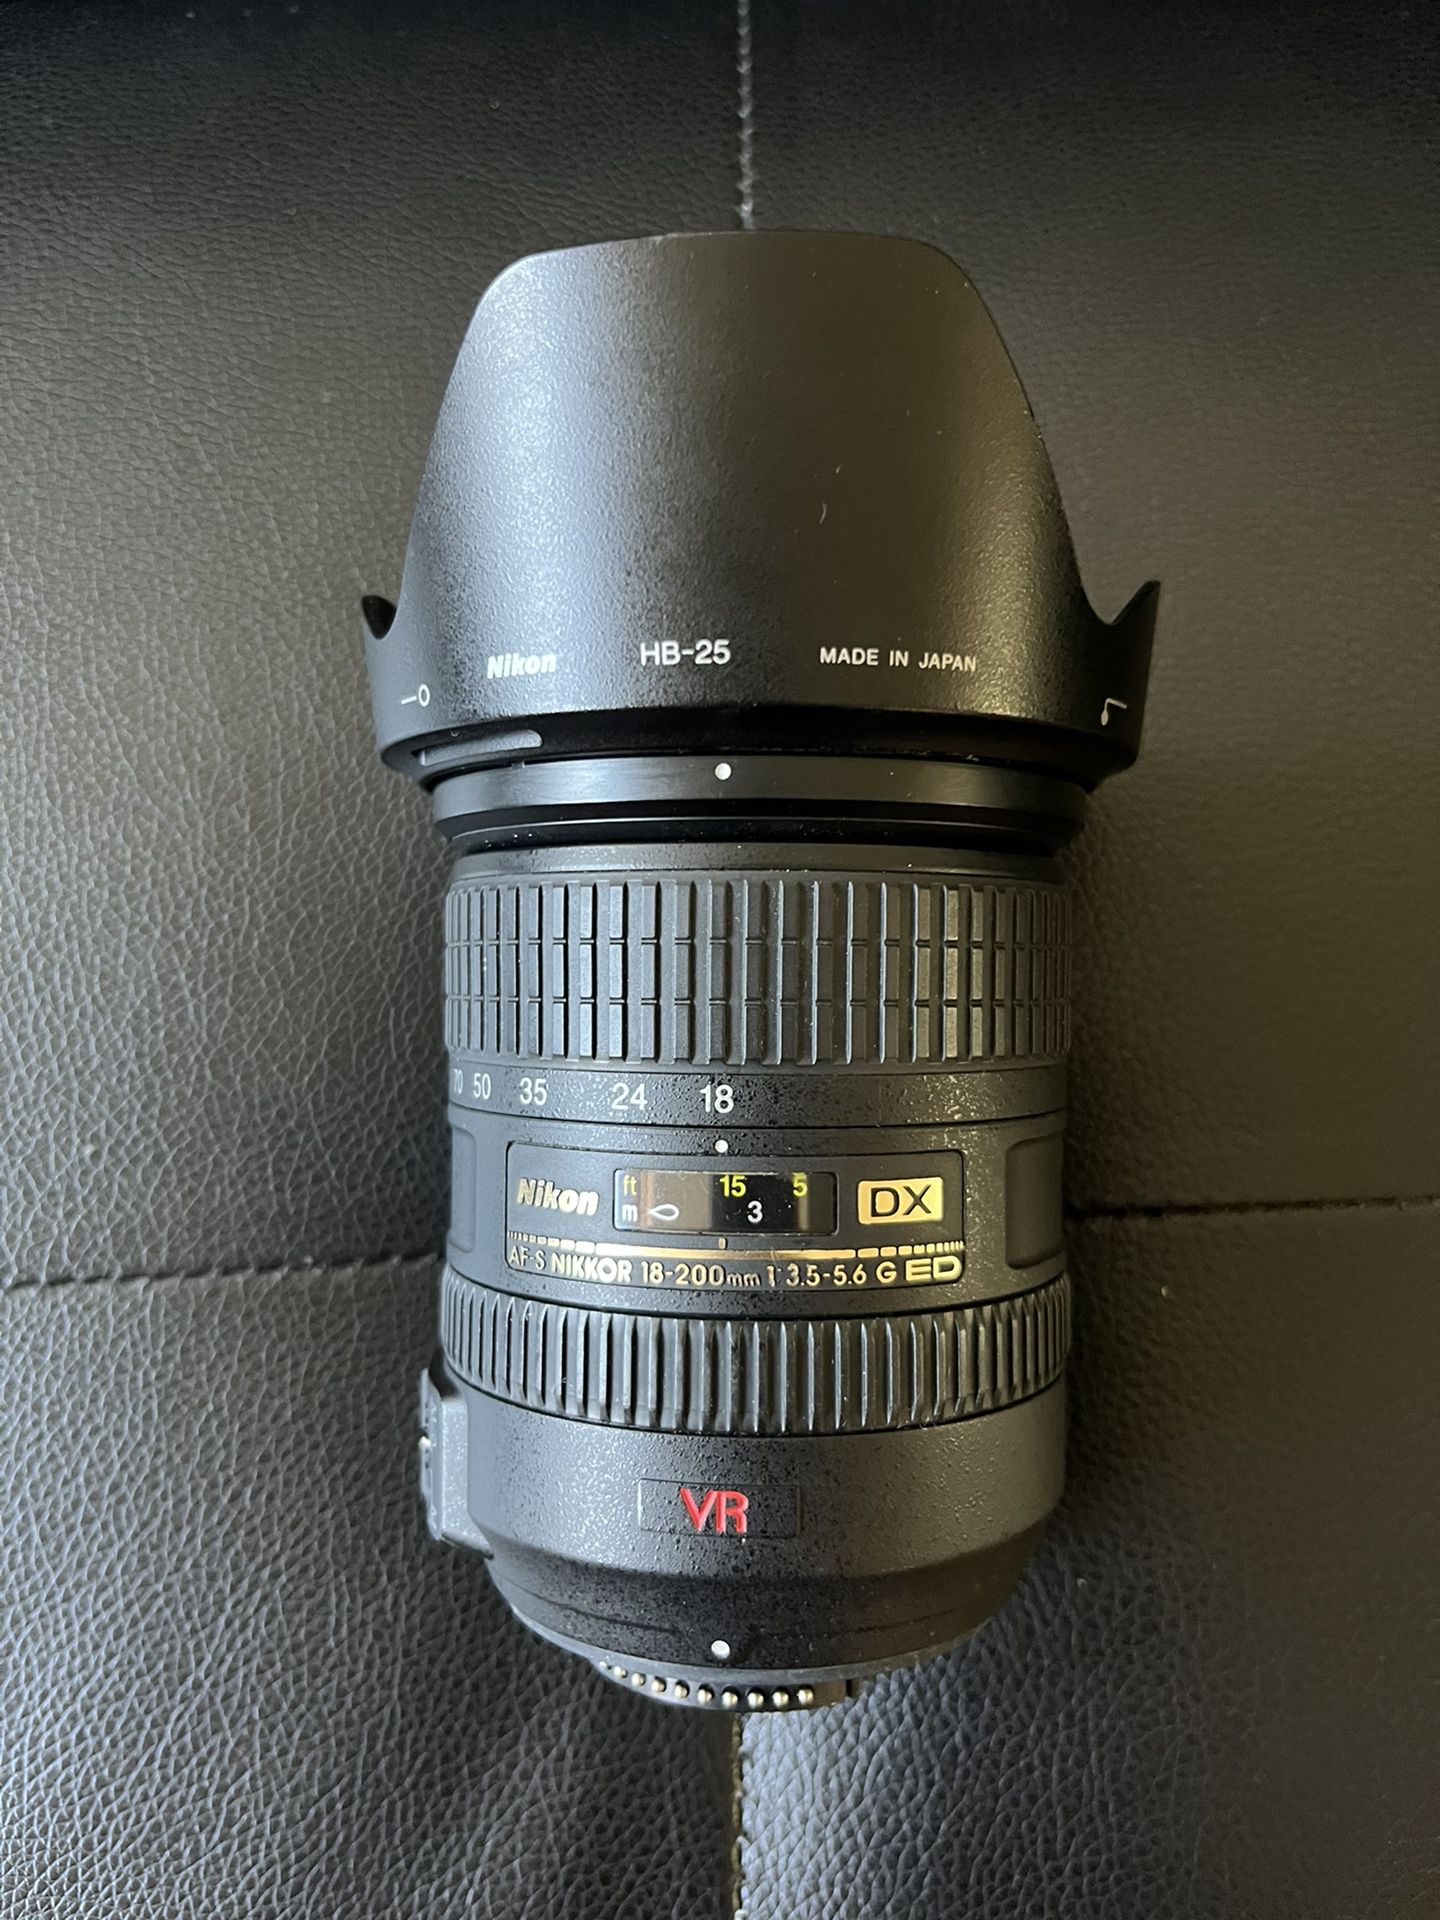 18-200mm DX VR AF-S NIKKOR Lens